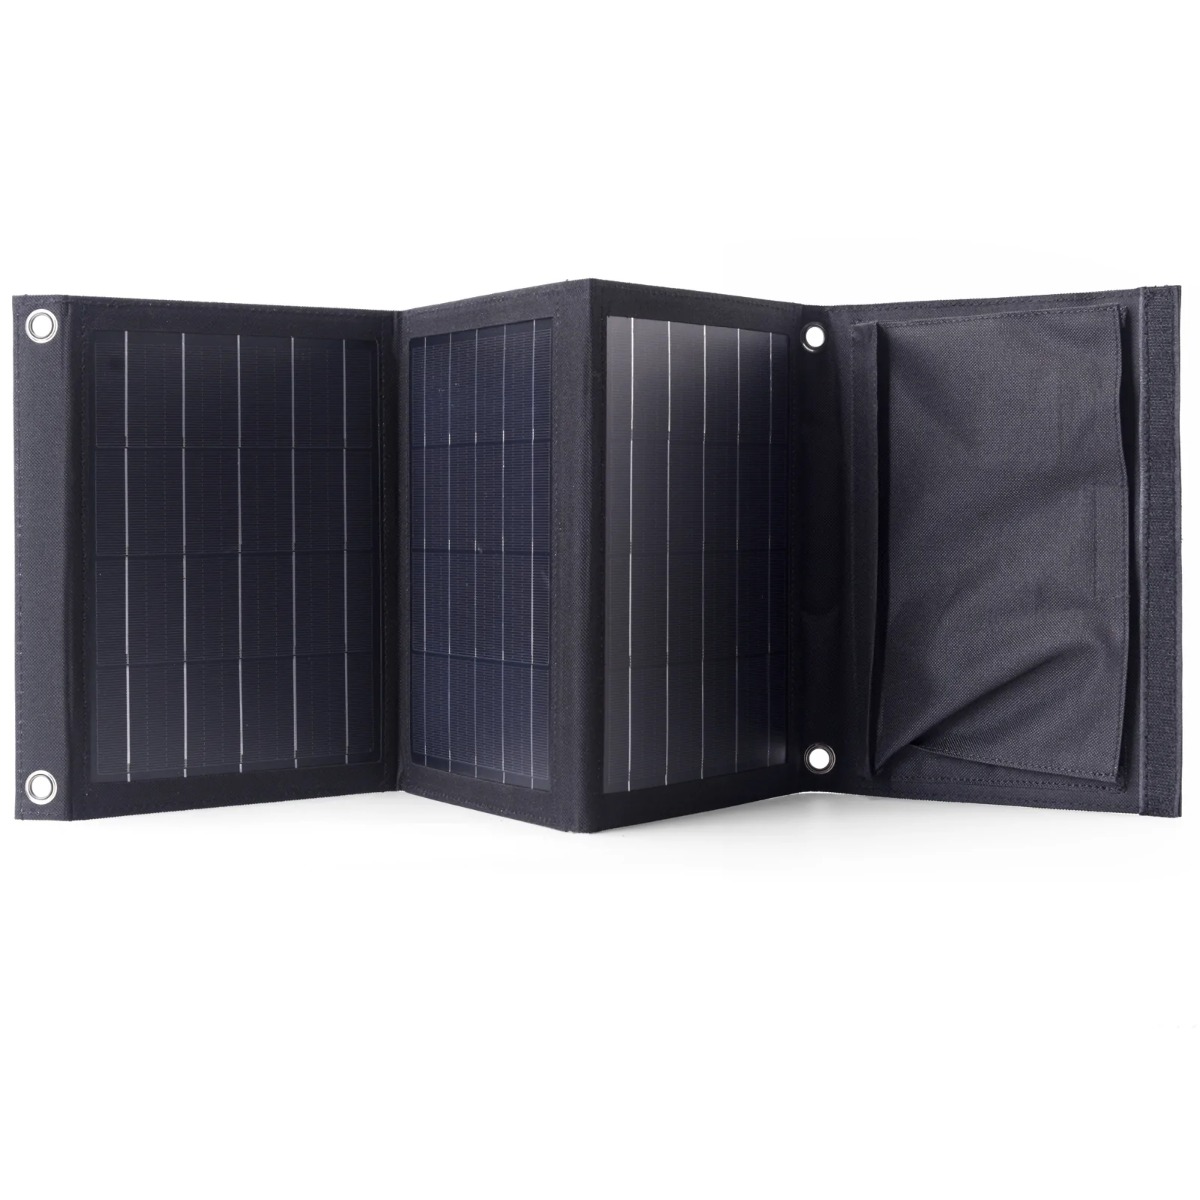 Портативная складная солнечная батарея Choetech SC005 панель 22 Вт монокристалл